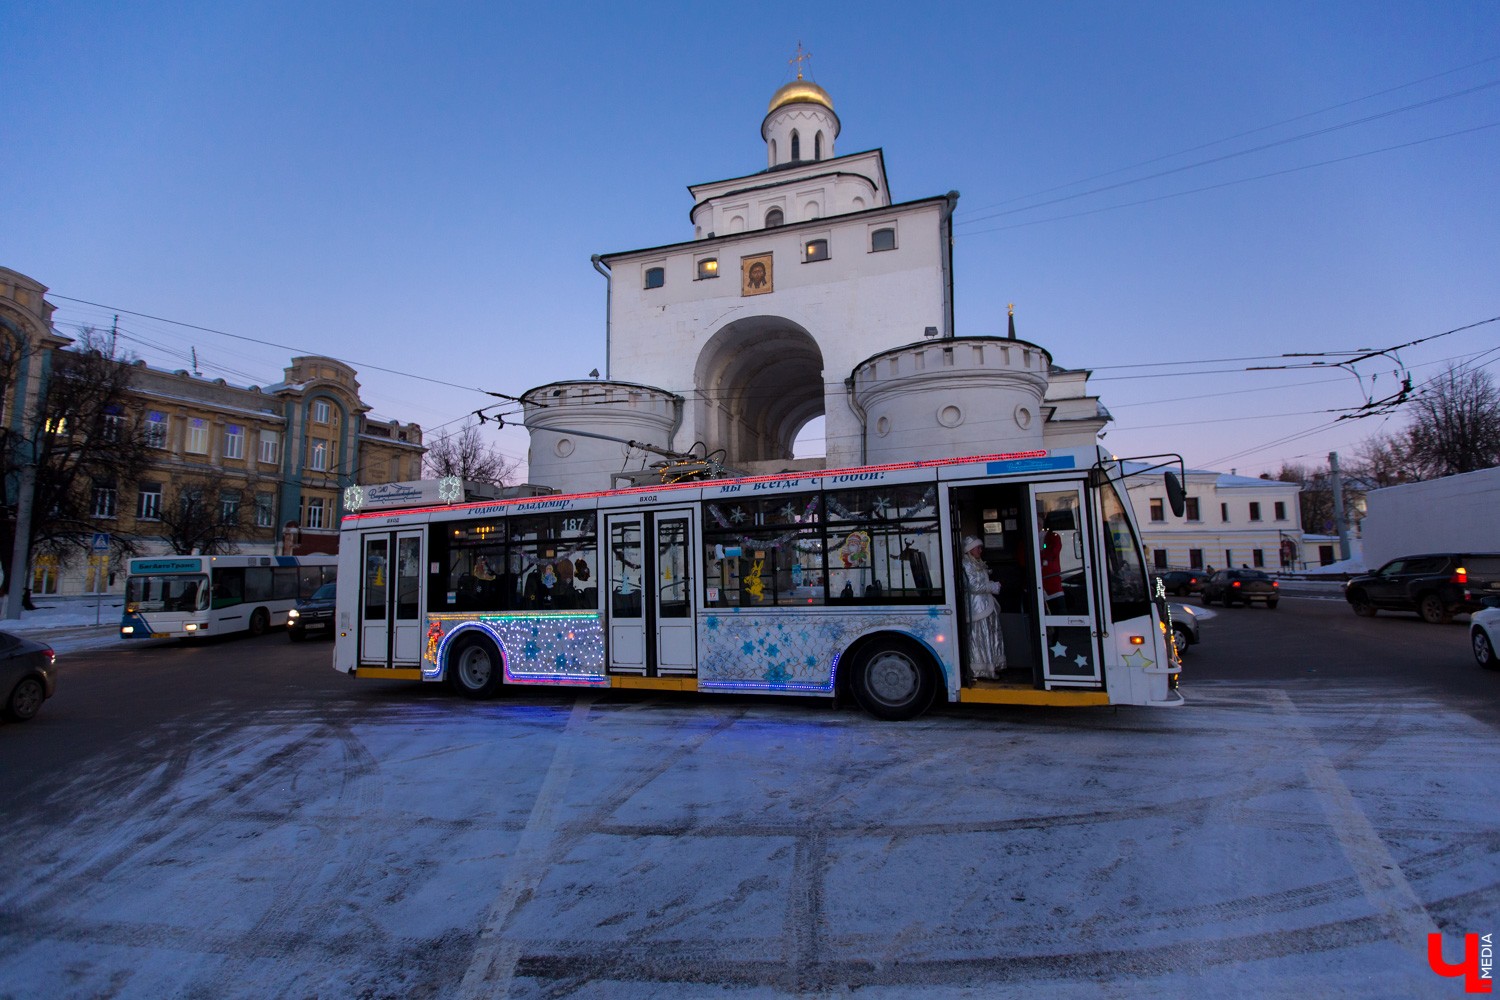 Планы изменились в лучшую сторону. Бесплатные рейсы автобусов и троллейбусов все же будут работать для владимирцев в новогоднюю ночь.